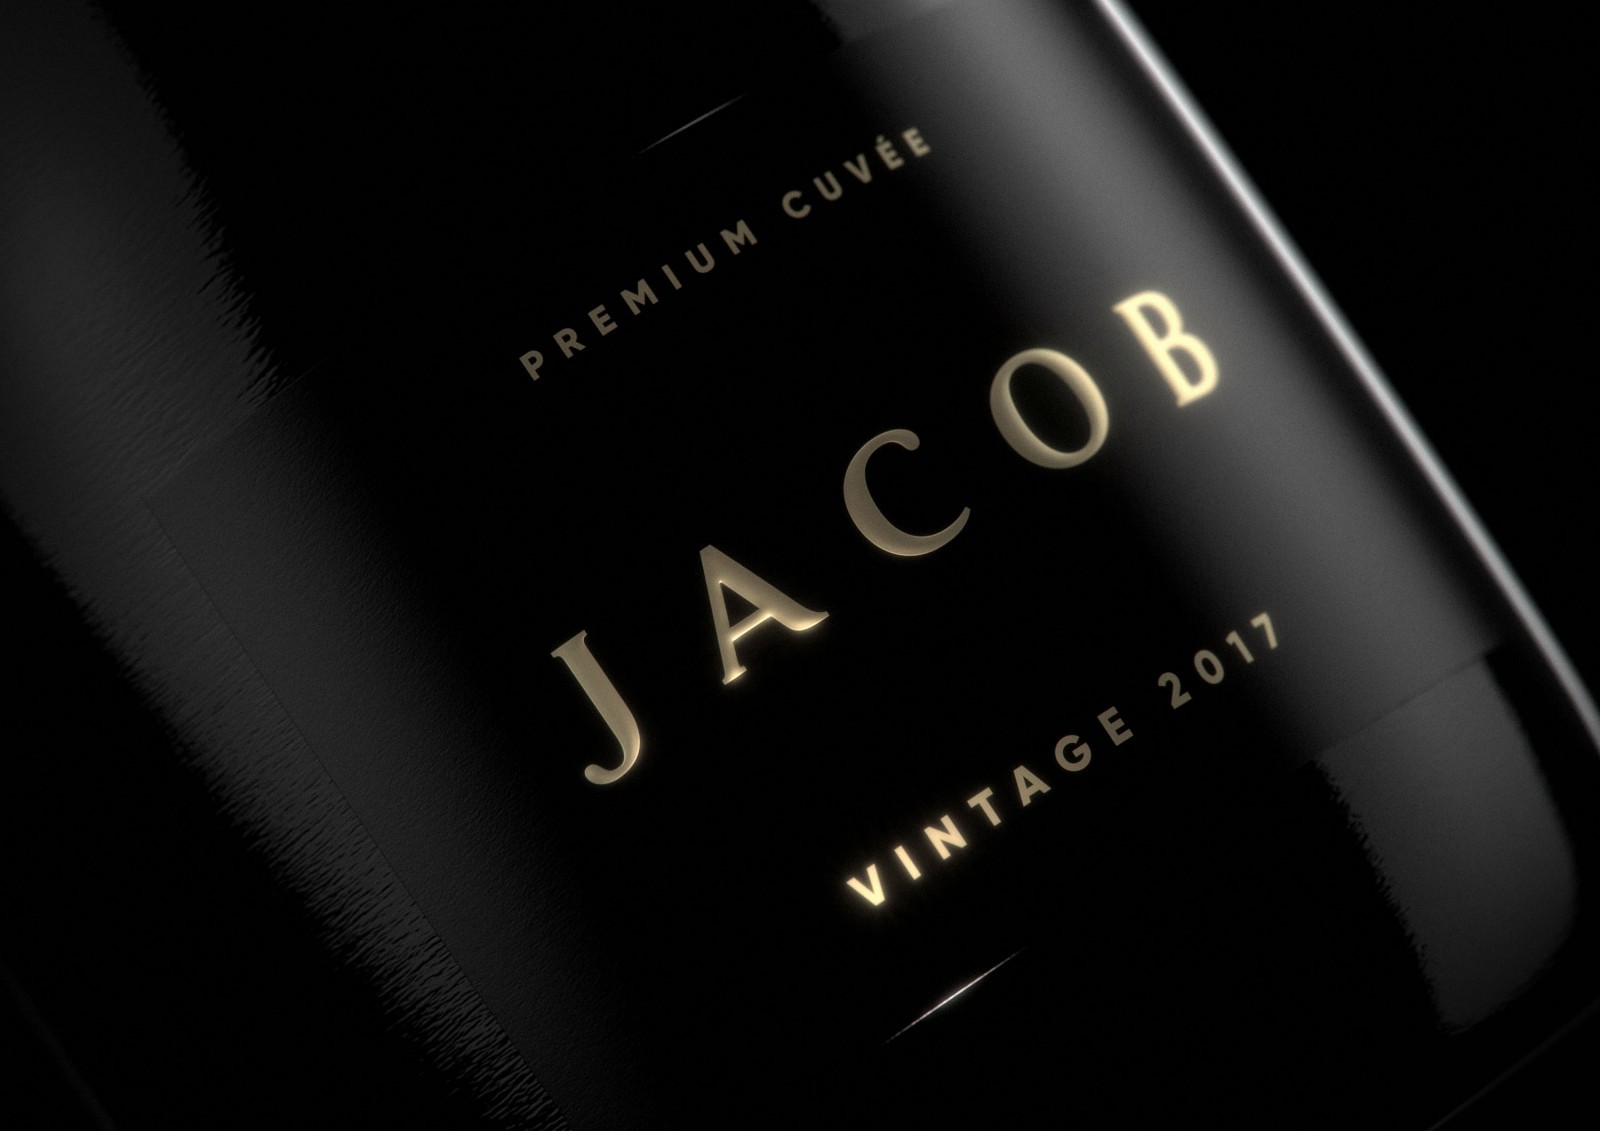 Australian Premium Cuvée ‘Jacob’ Designed by Boldinc